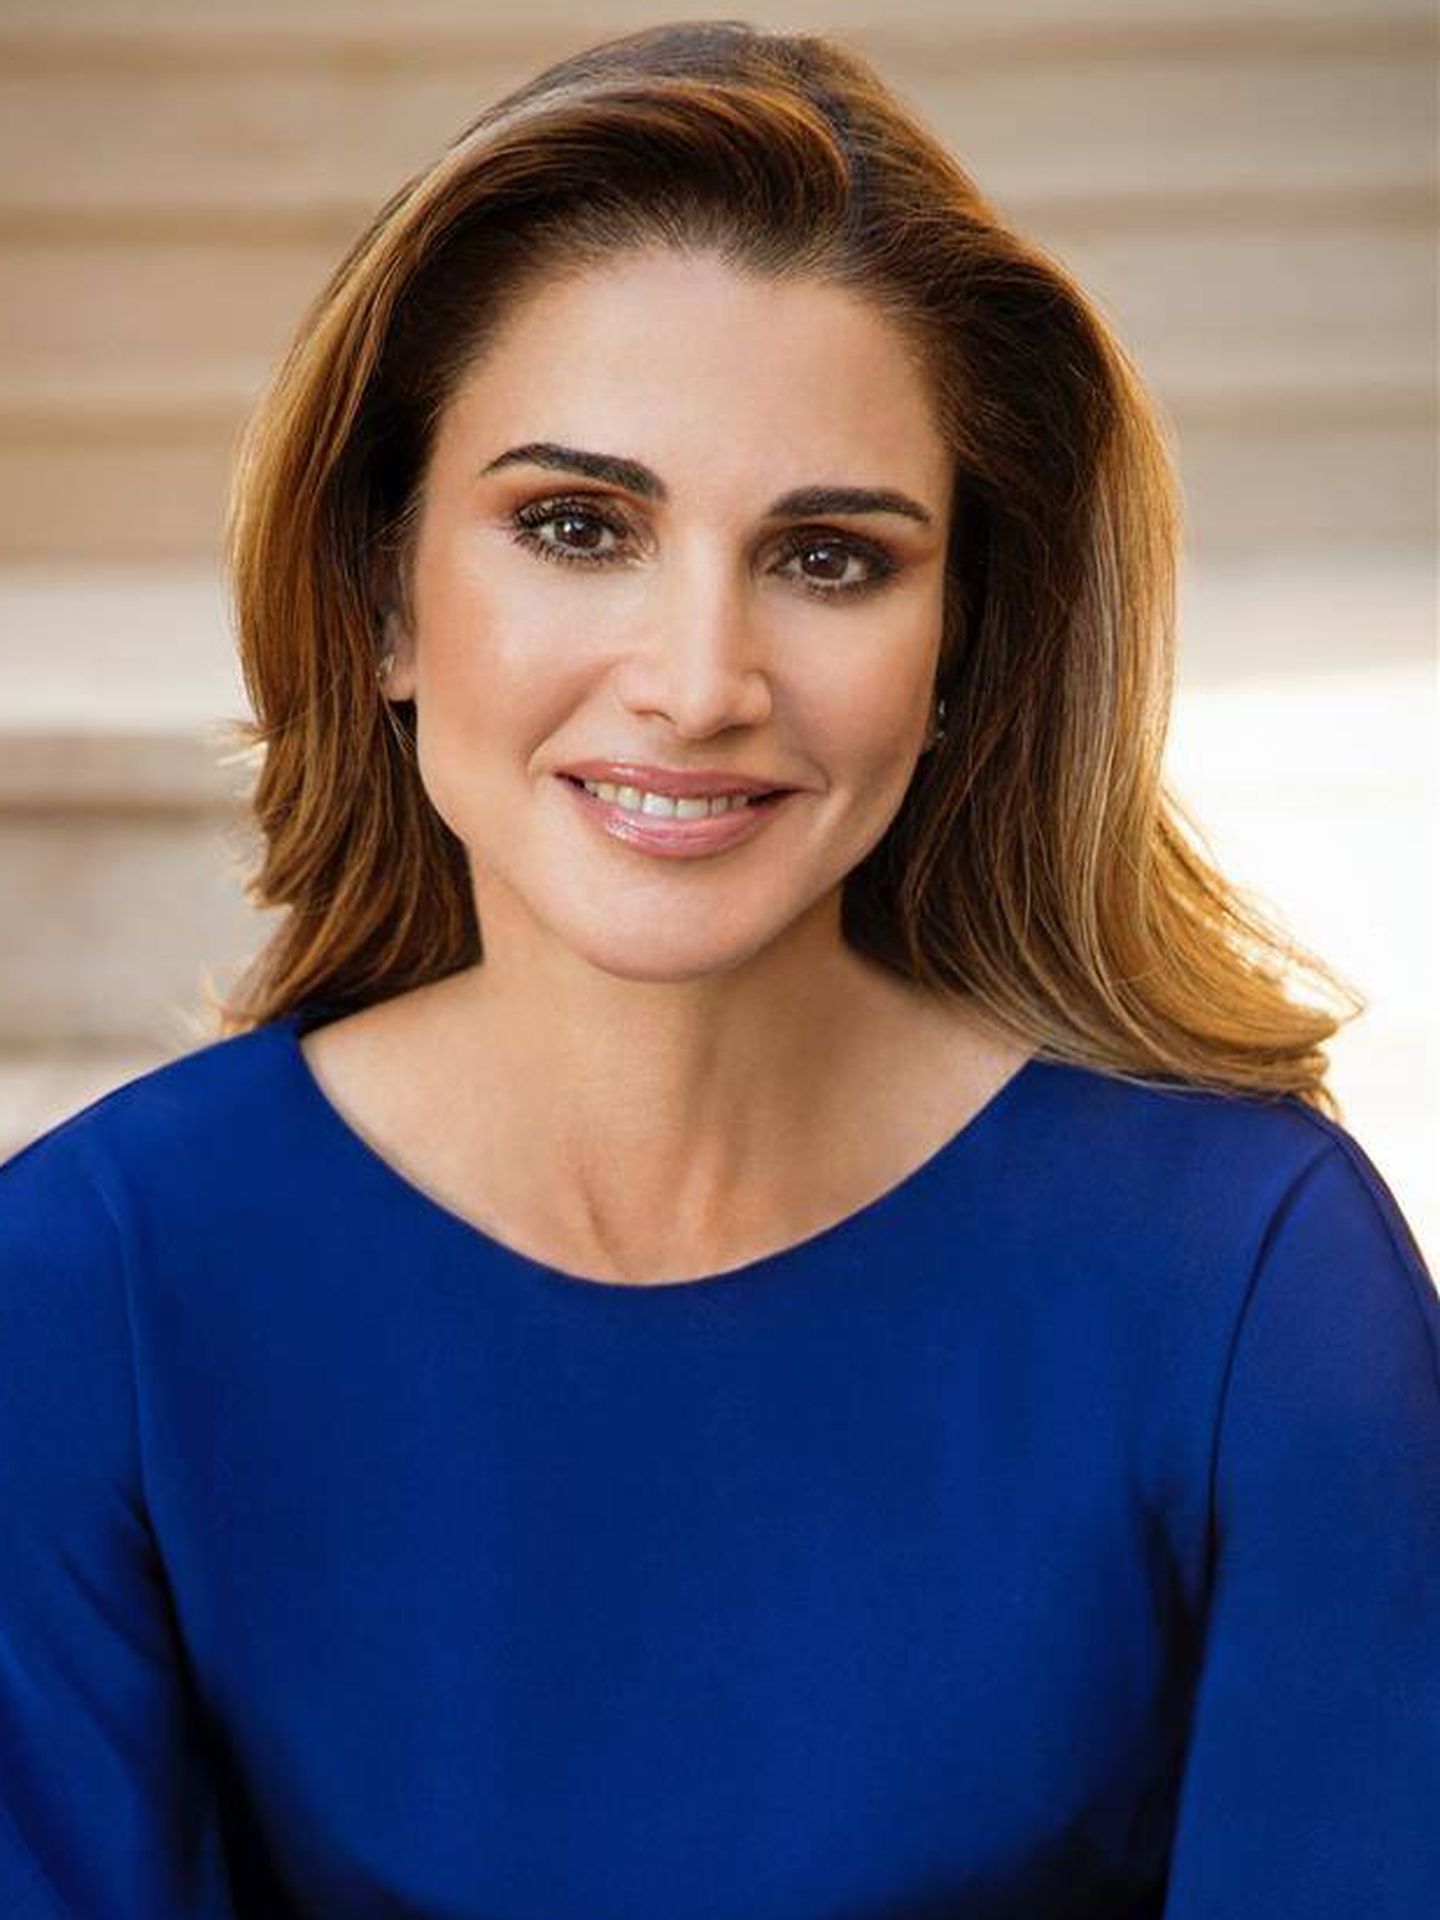 La otra imagen de Rania, también guapísima. (Casa Real Jordania)